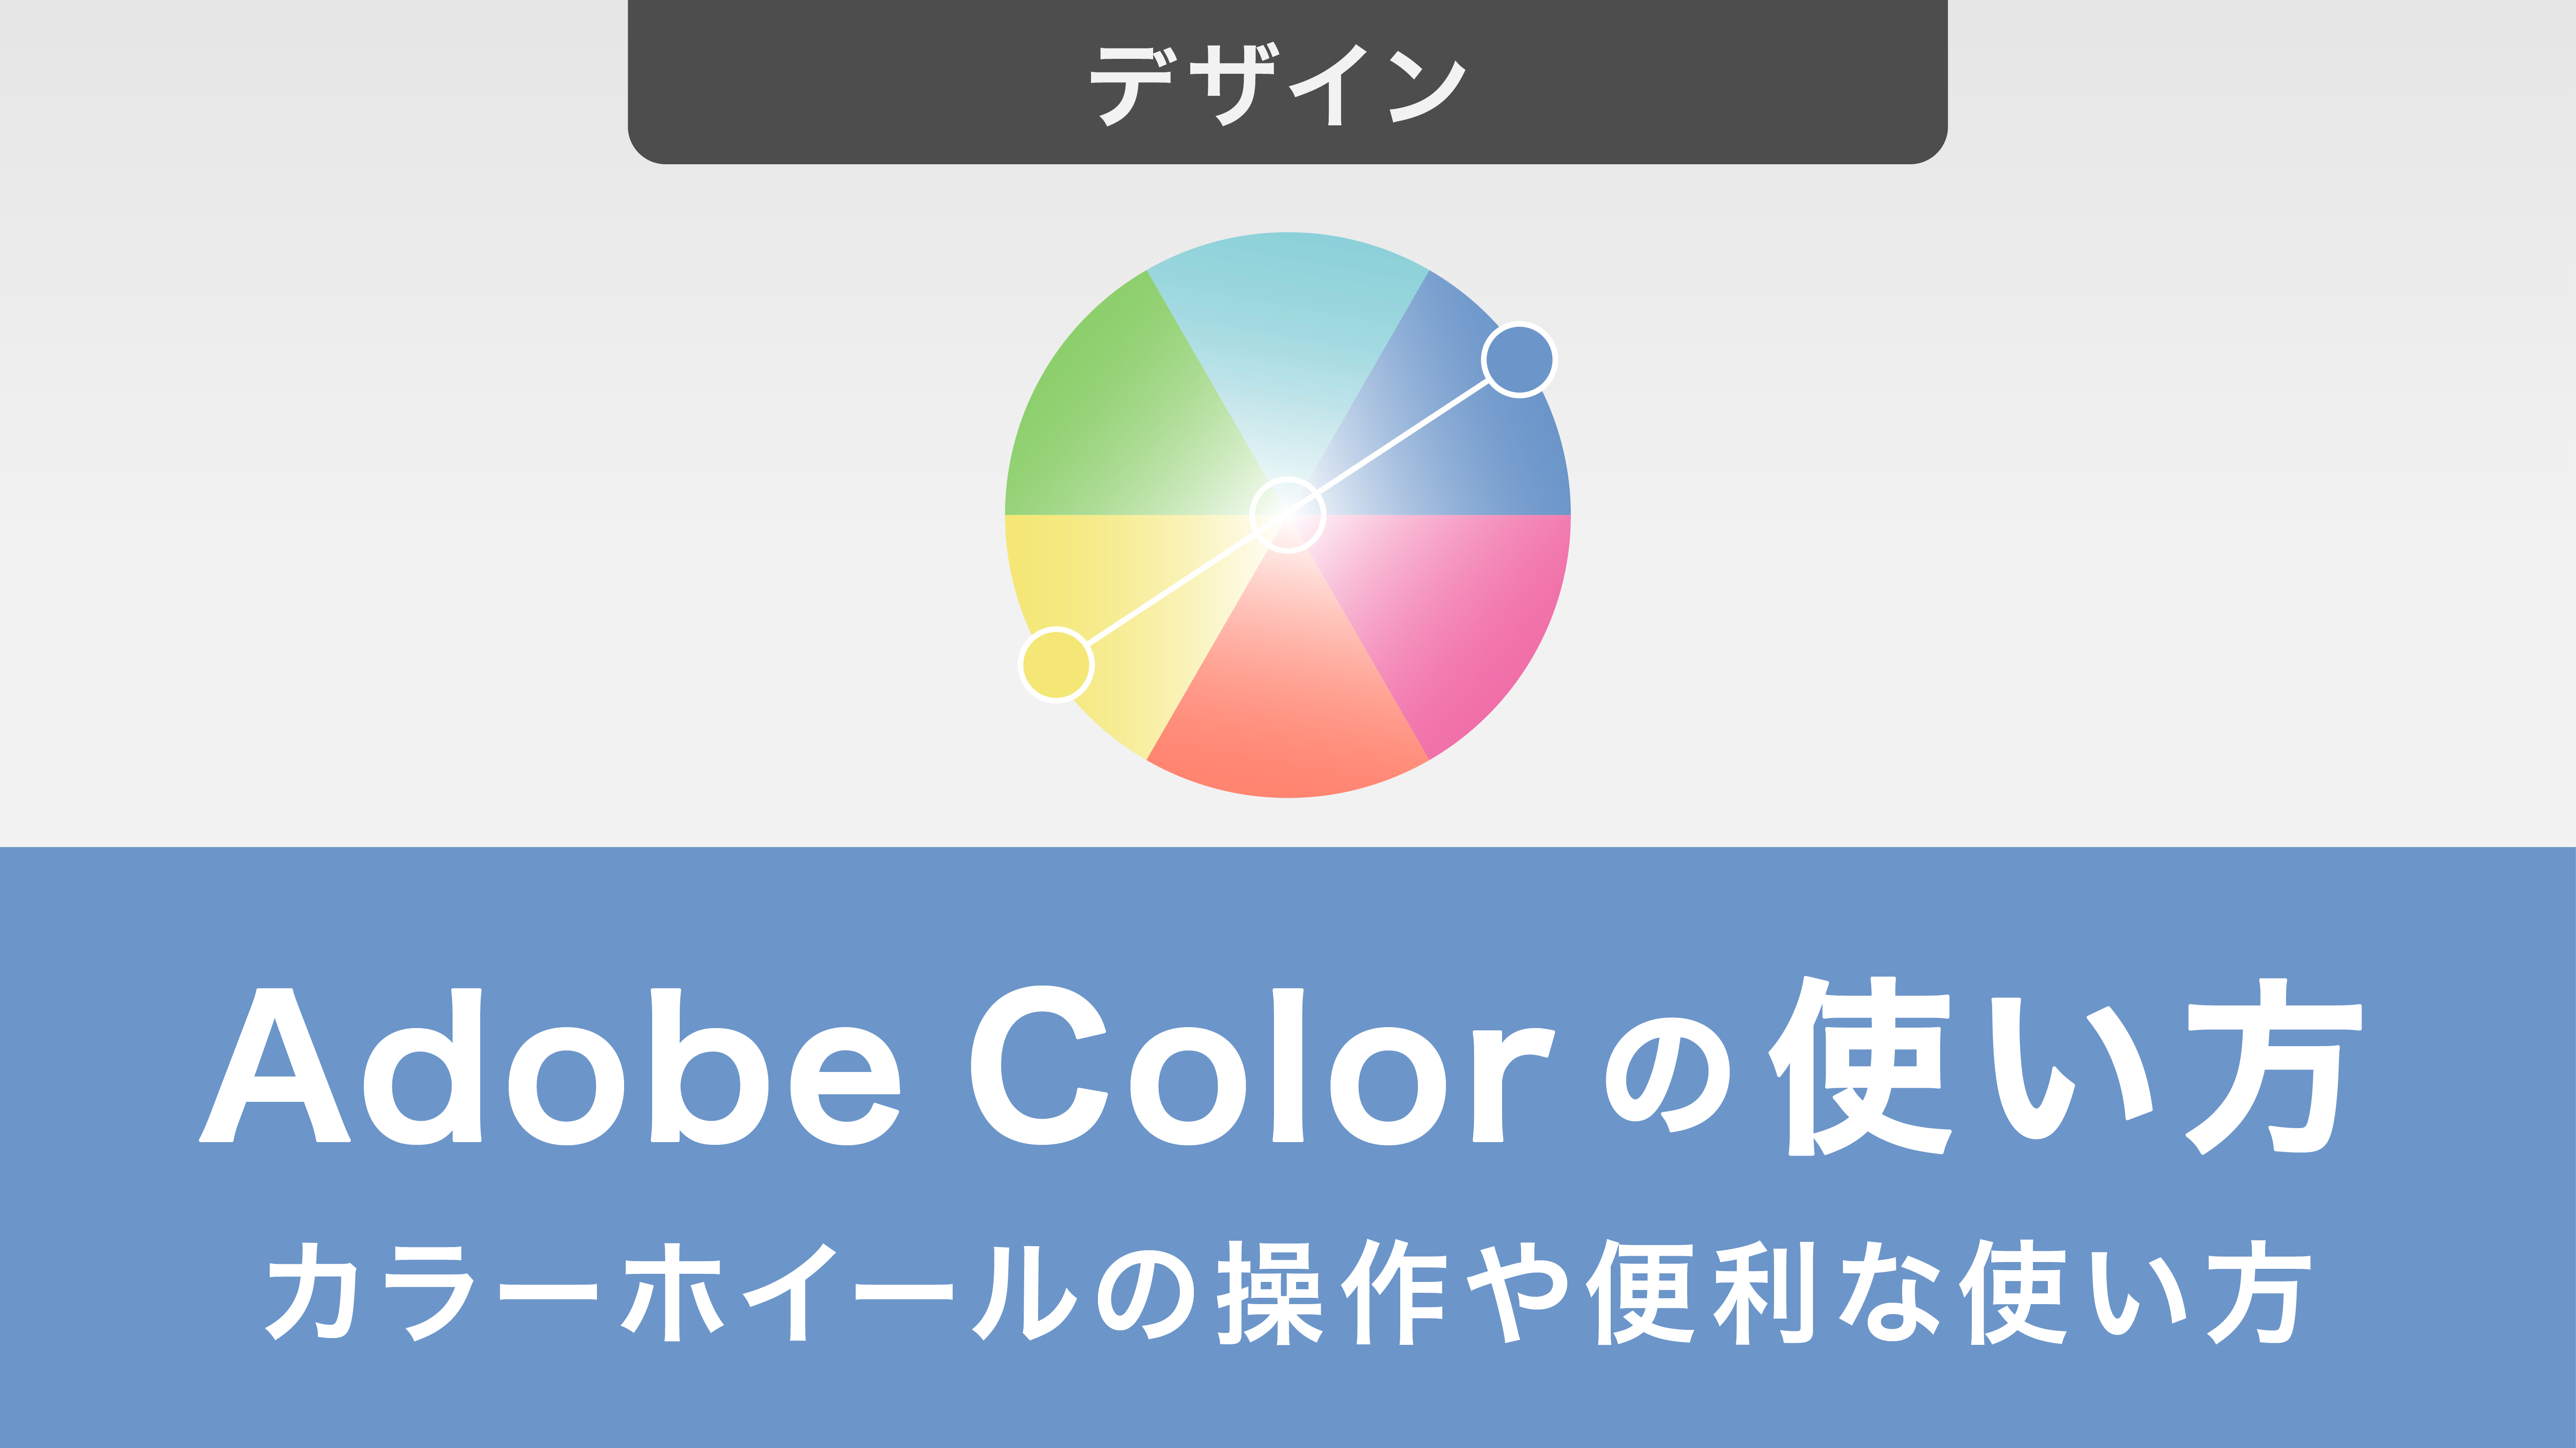 Adobe Colorの使い方を紹介！カラーホイールの操作や便利な使い方まで解説